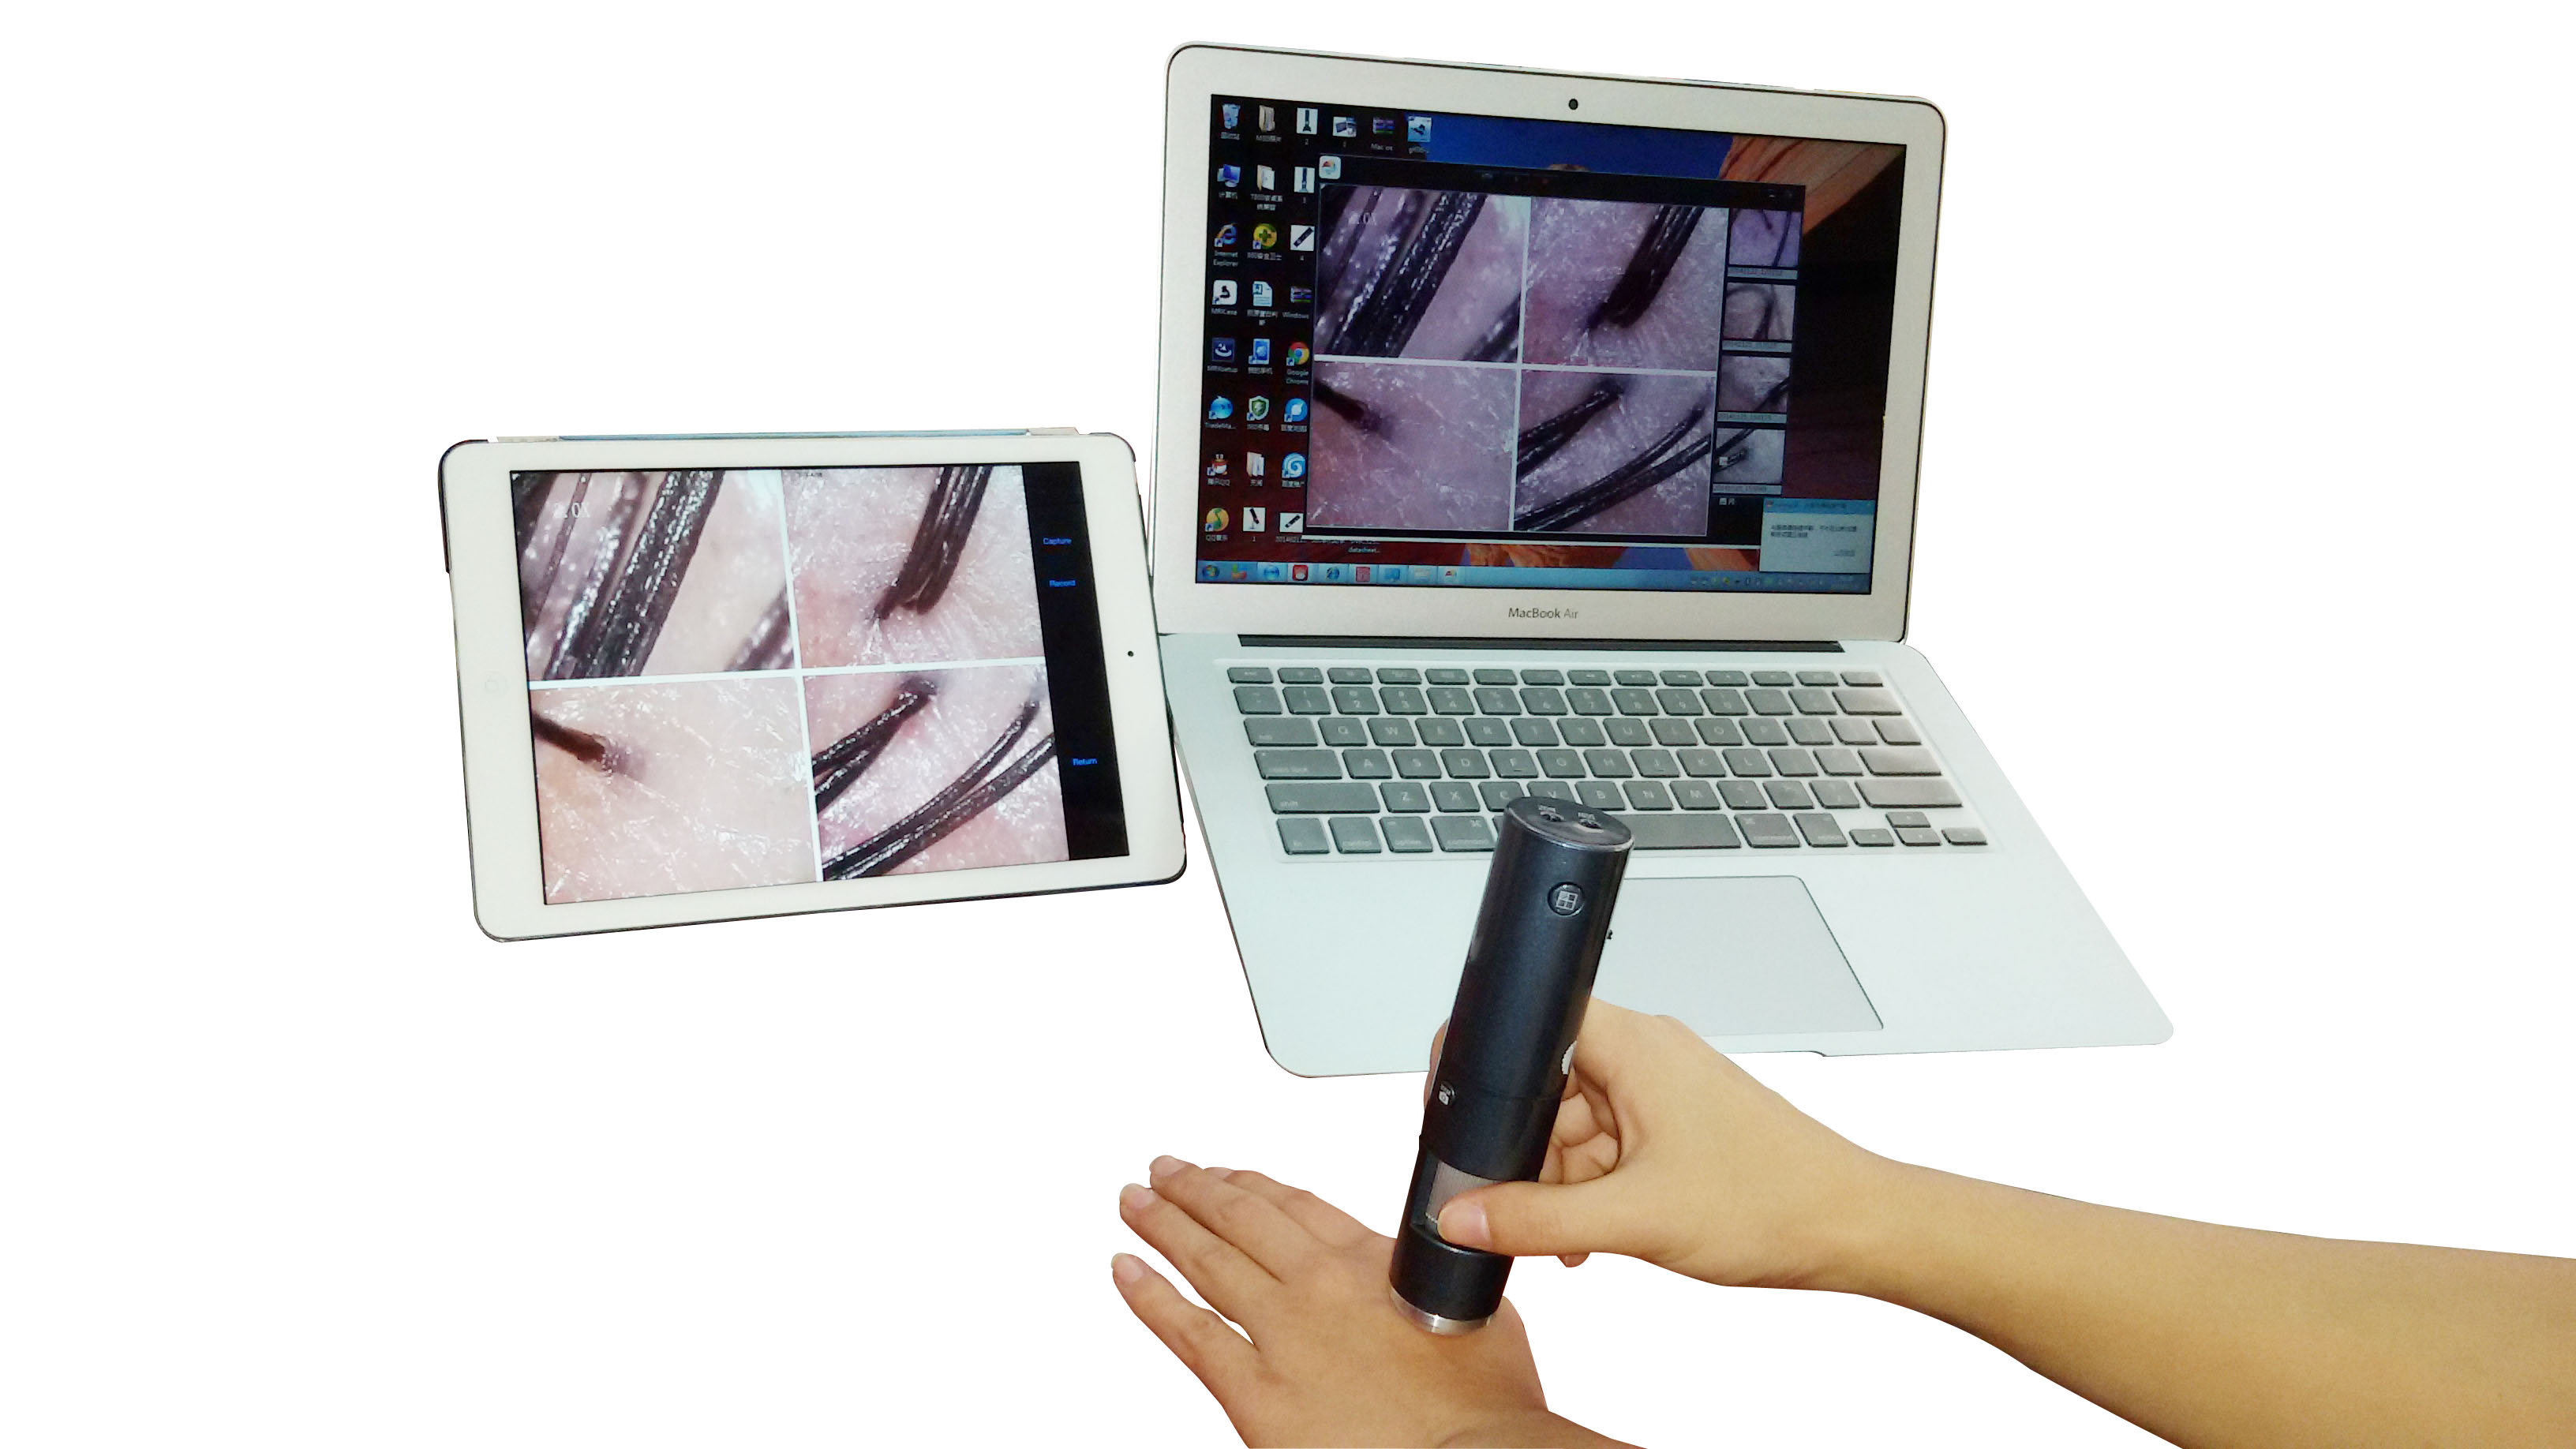 体式显微镜工业显微镜工具显微镜数码显微镜数码放大镜wifi显微镜无线接手机平板电脑支持安卓苹果系统